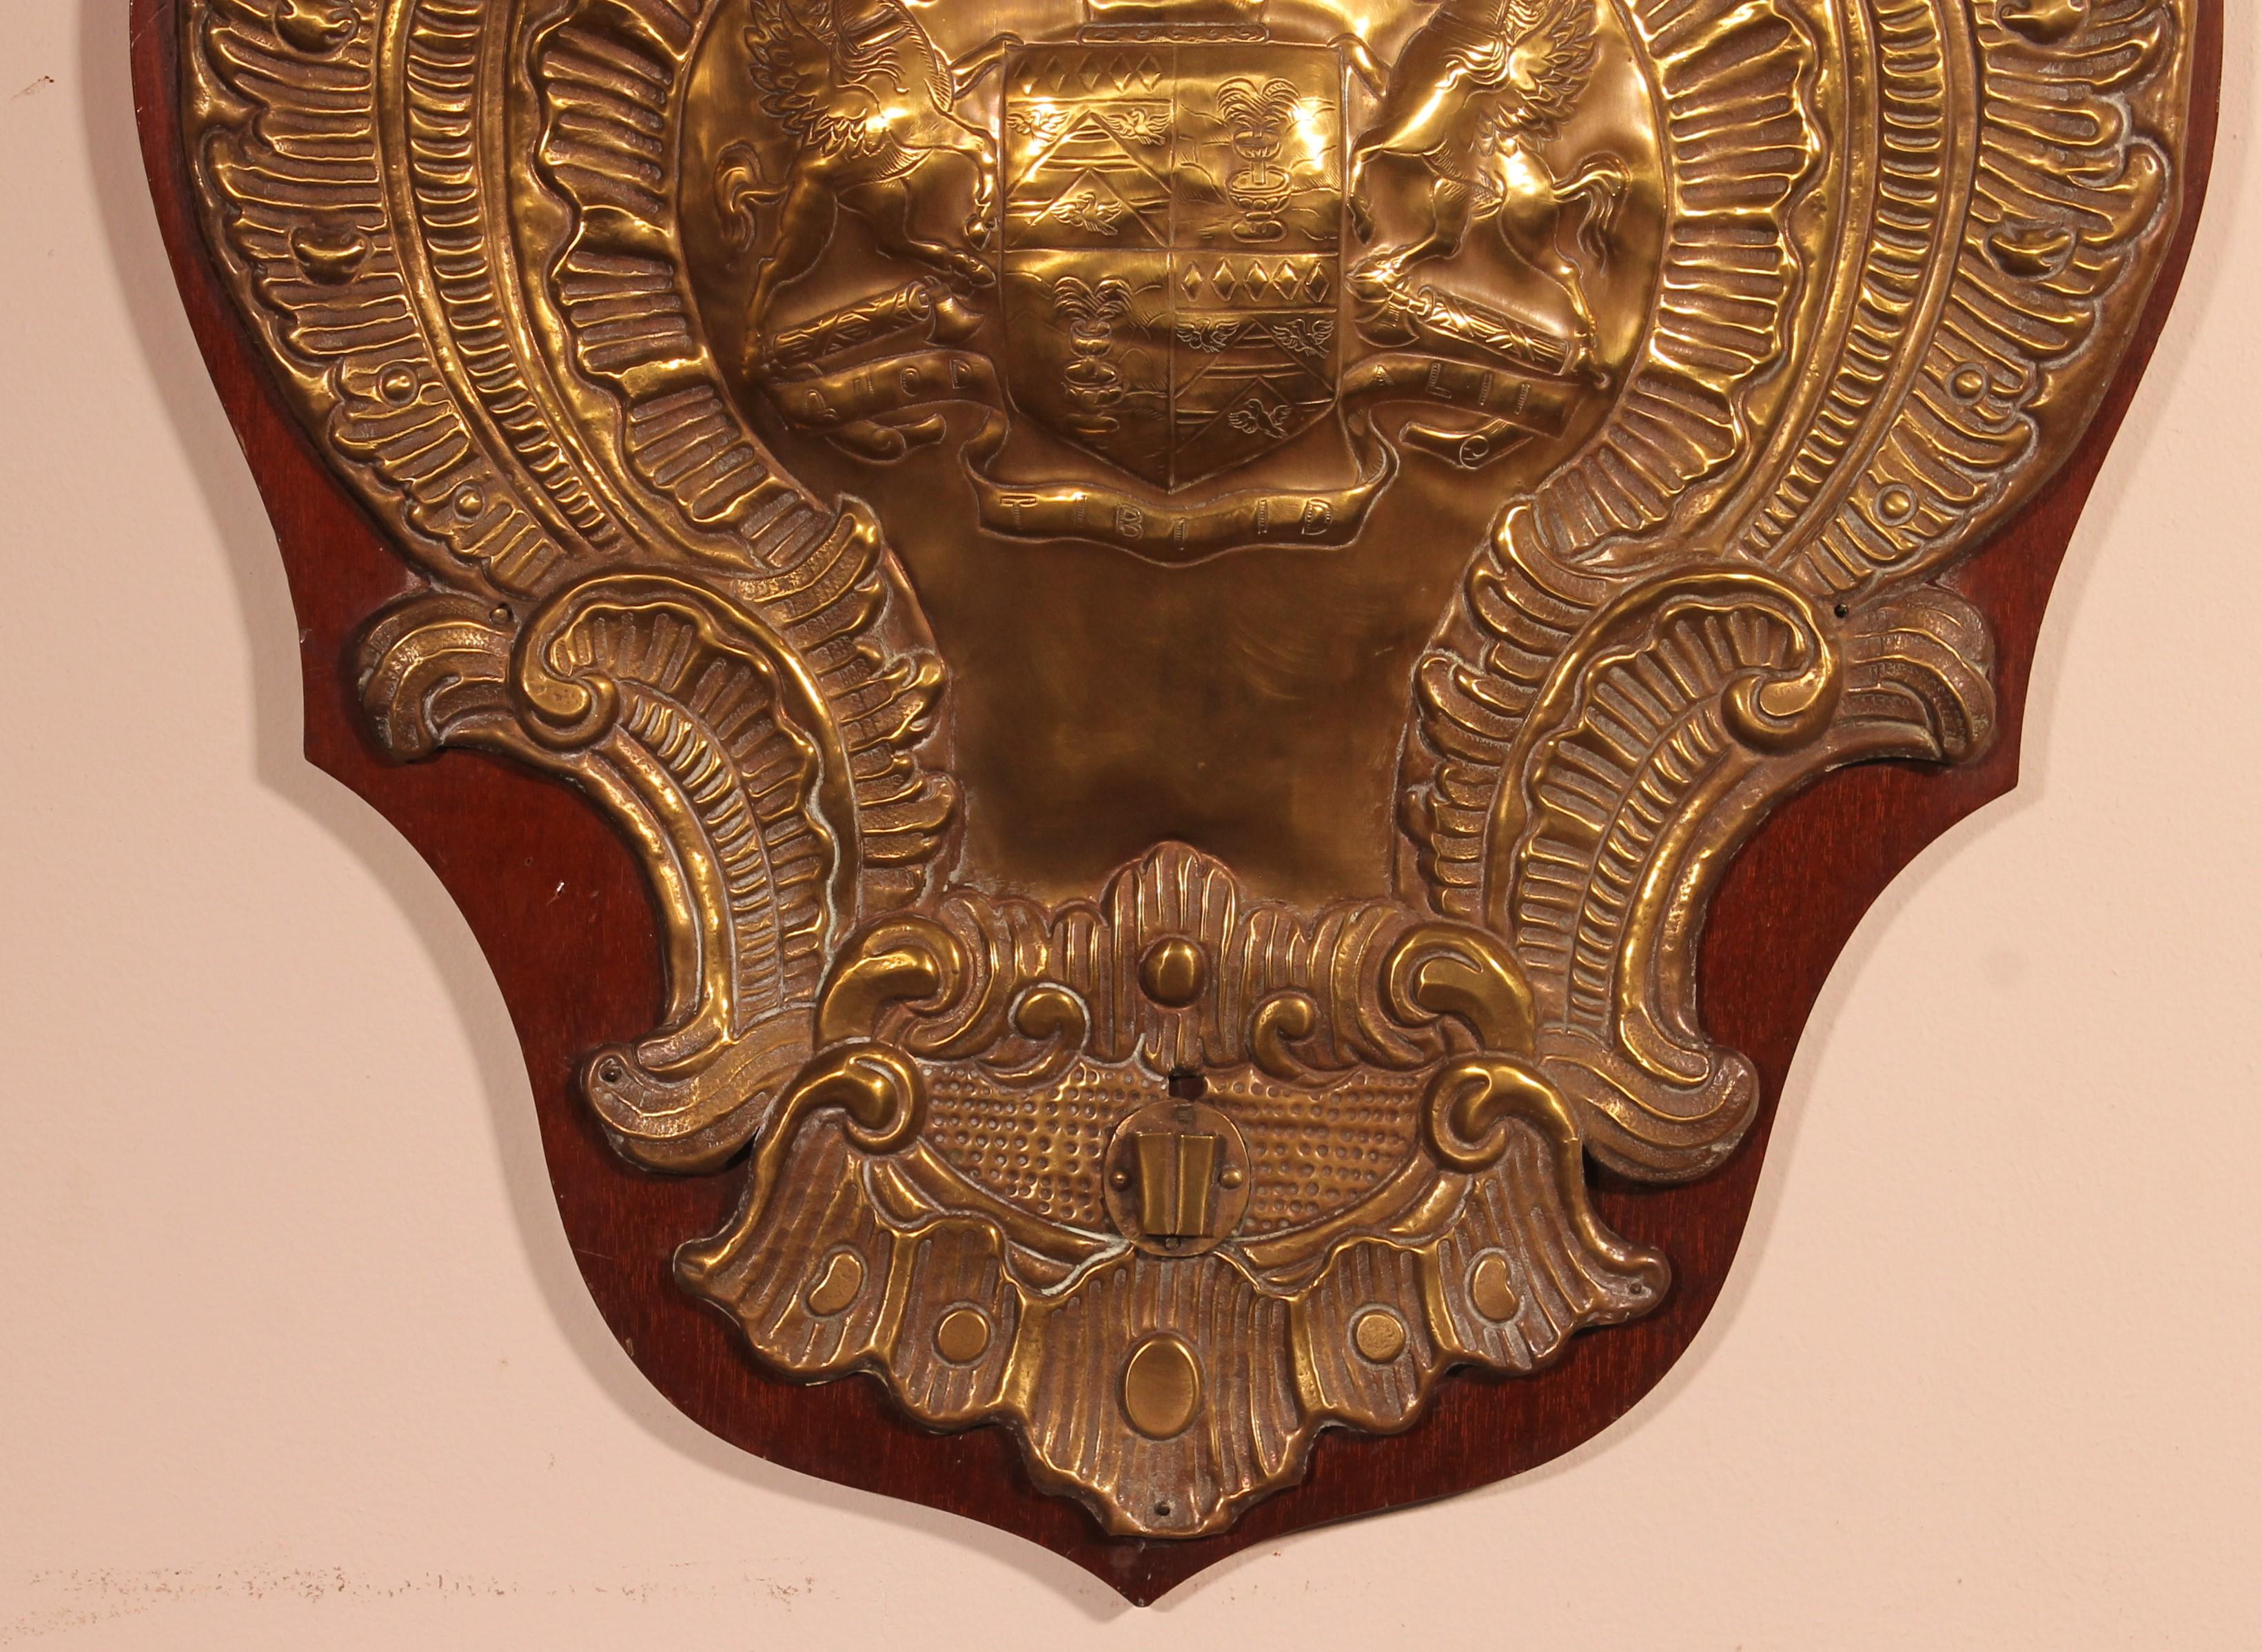 Hervorragende Kupferwandtafel, die das Wappen einer englischen Adelsfamilie aus dem 19.
Es ruht auf einem Mahagoni-Rahmen.
Sehr gute Arbeit.
Objekt der Neugierde.
 